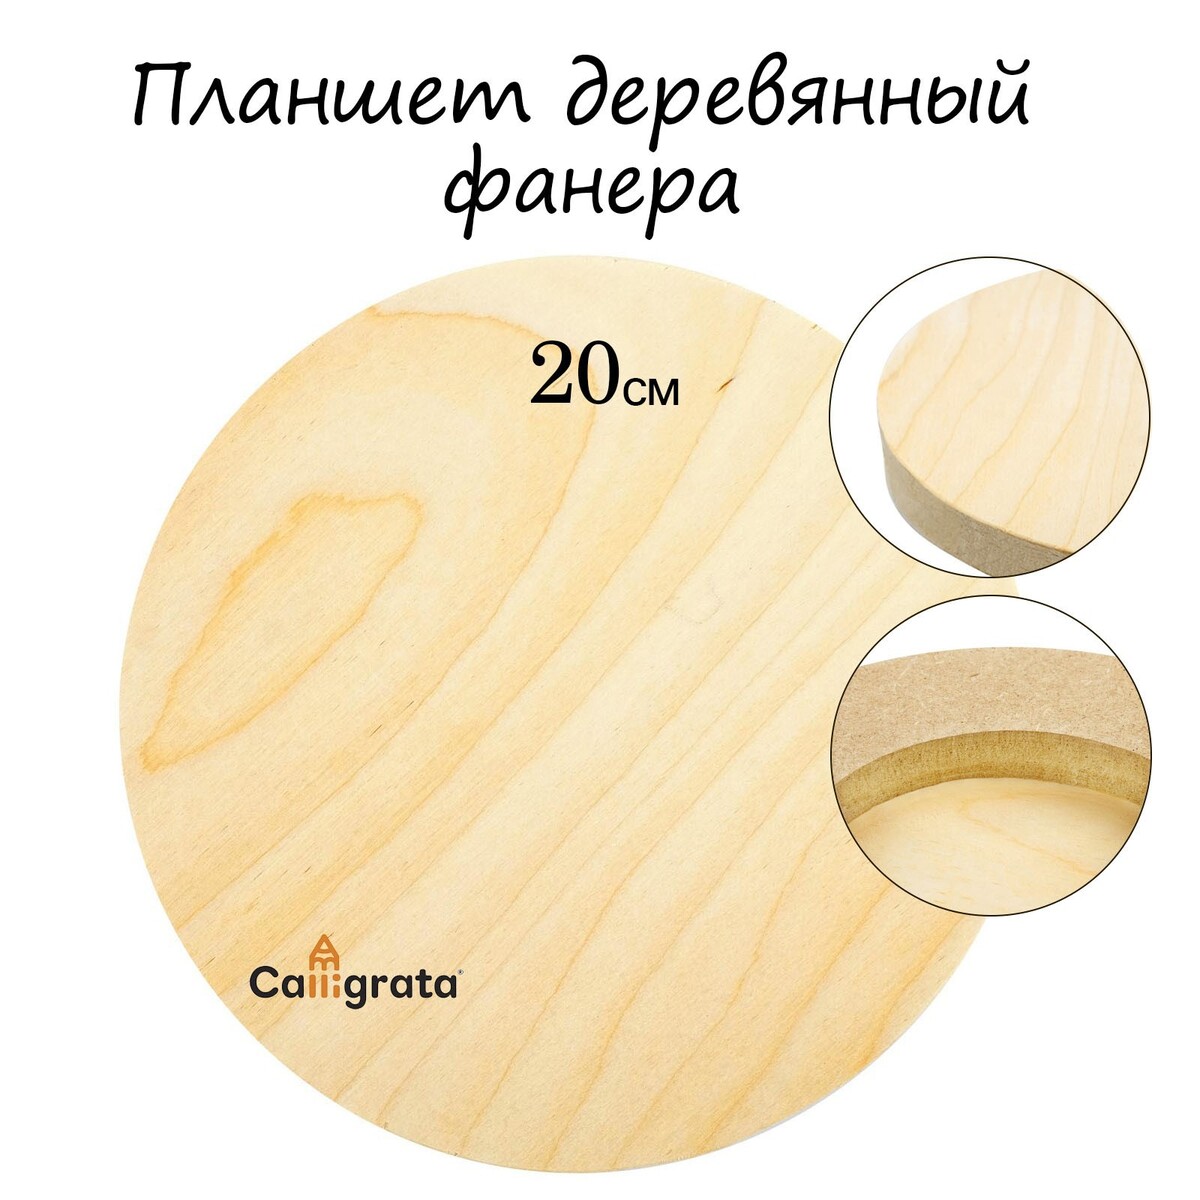 Планшет круглый деревянный фанера d-20 х 2 см, сосна, calligrata планшет деревянный 50 х 50 х 2 см двп